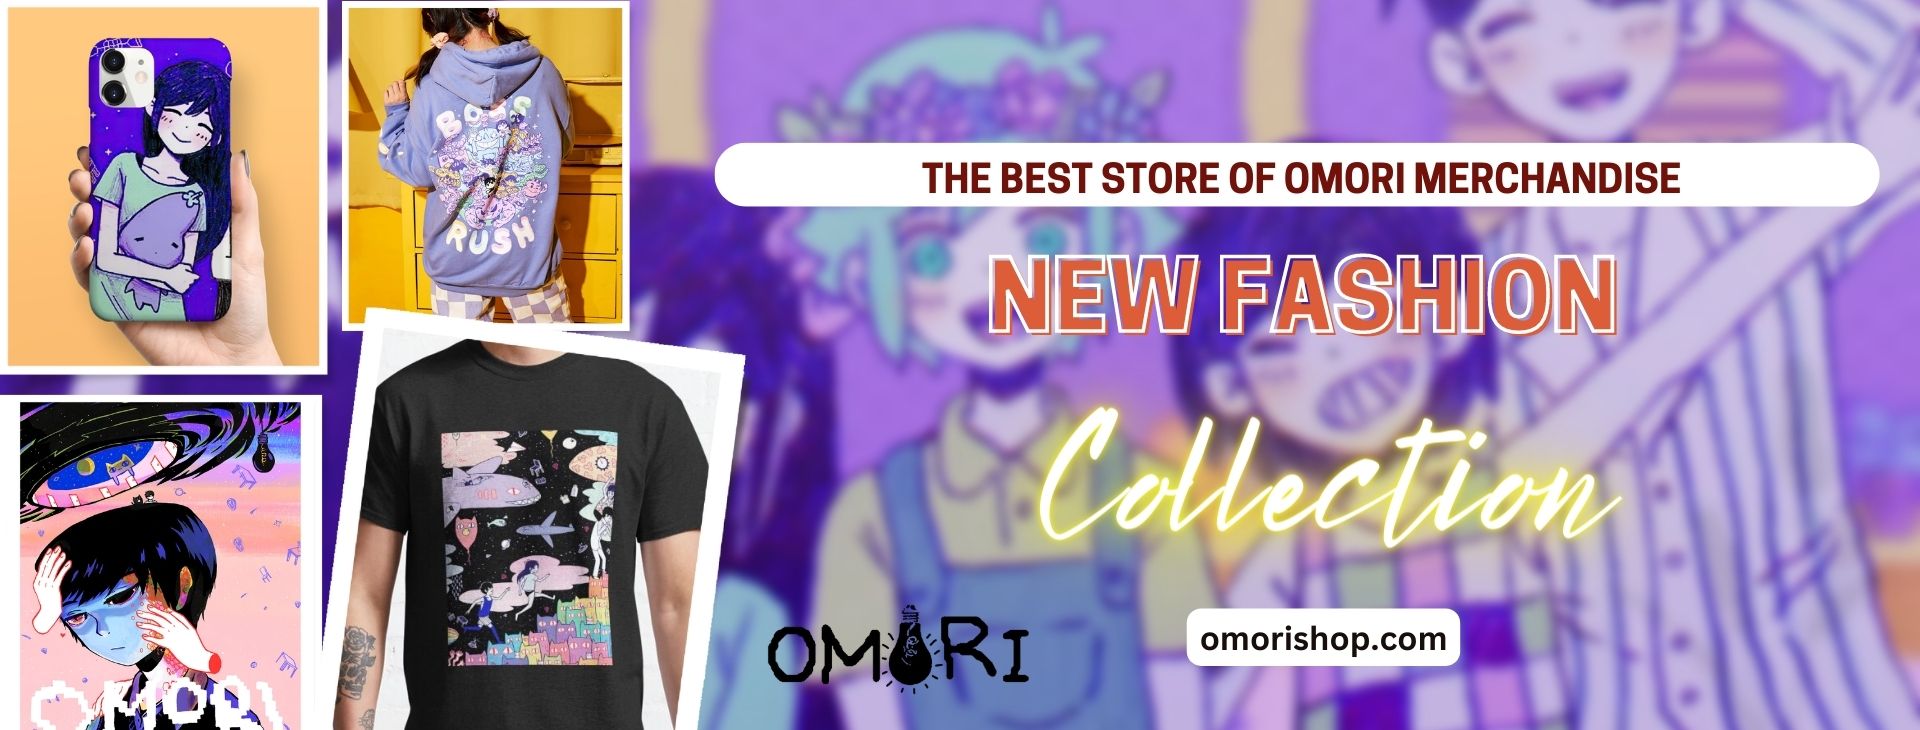 No edit omorishop.com banner - Omori Shop